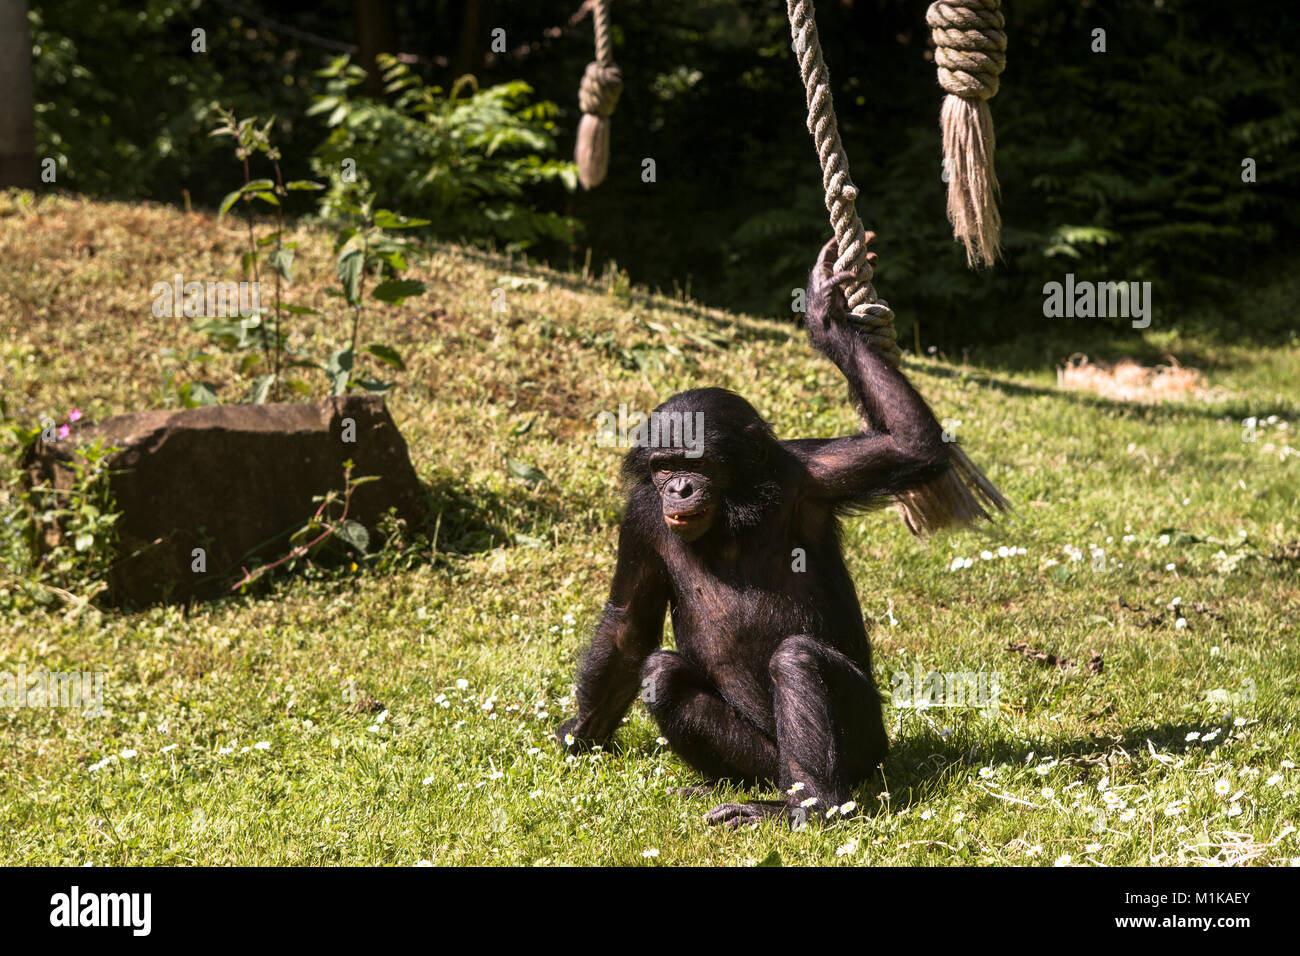 Germania, Colonia, giovani bonobo presso il giardino zoologico. Deutschland, Koeln, junger Bonobo im Zoo. Foto Stock